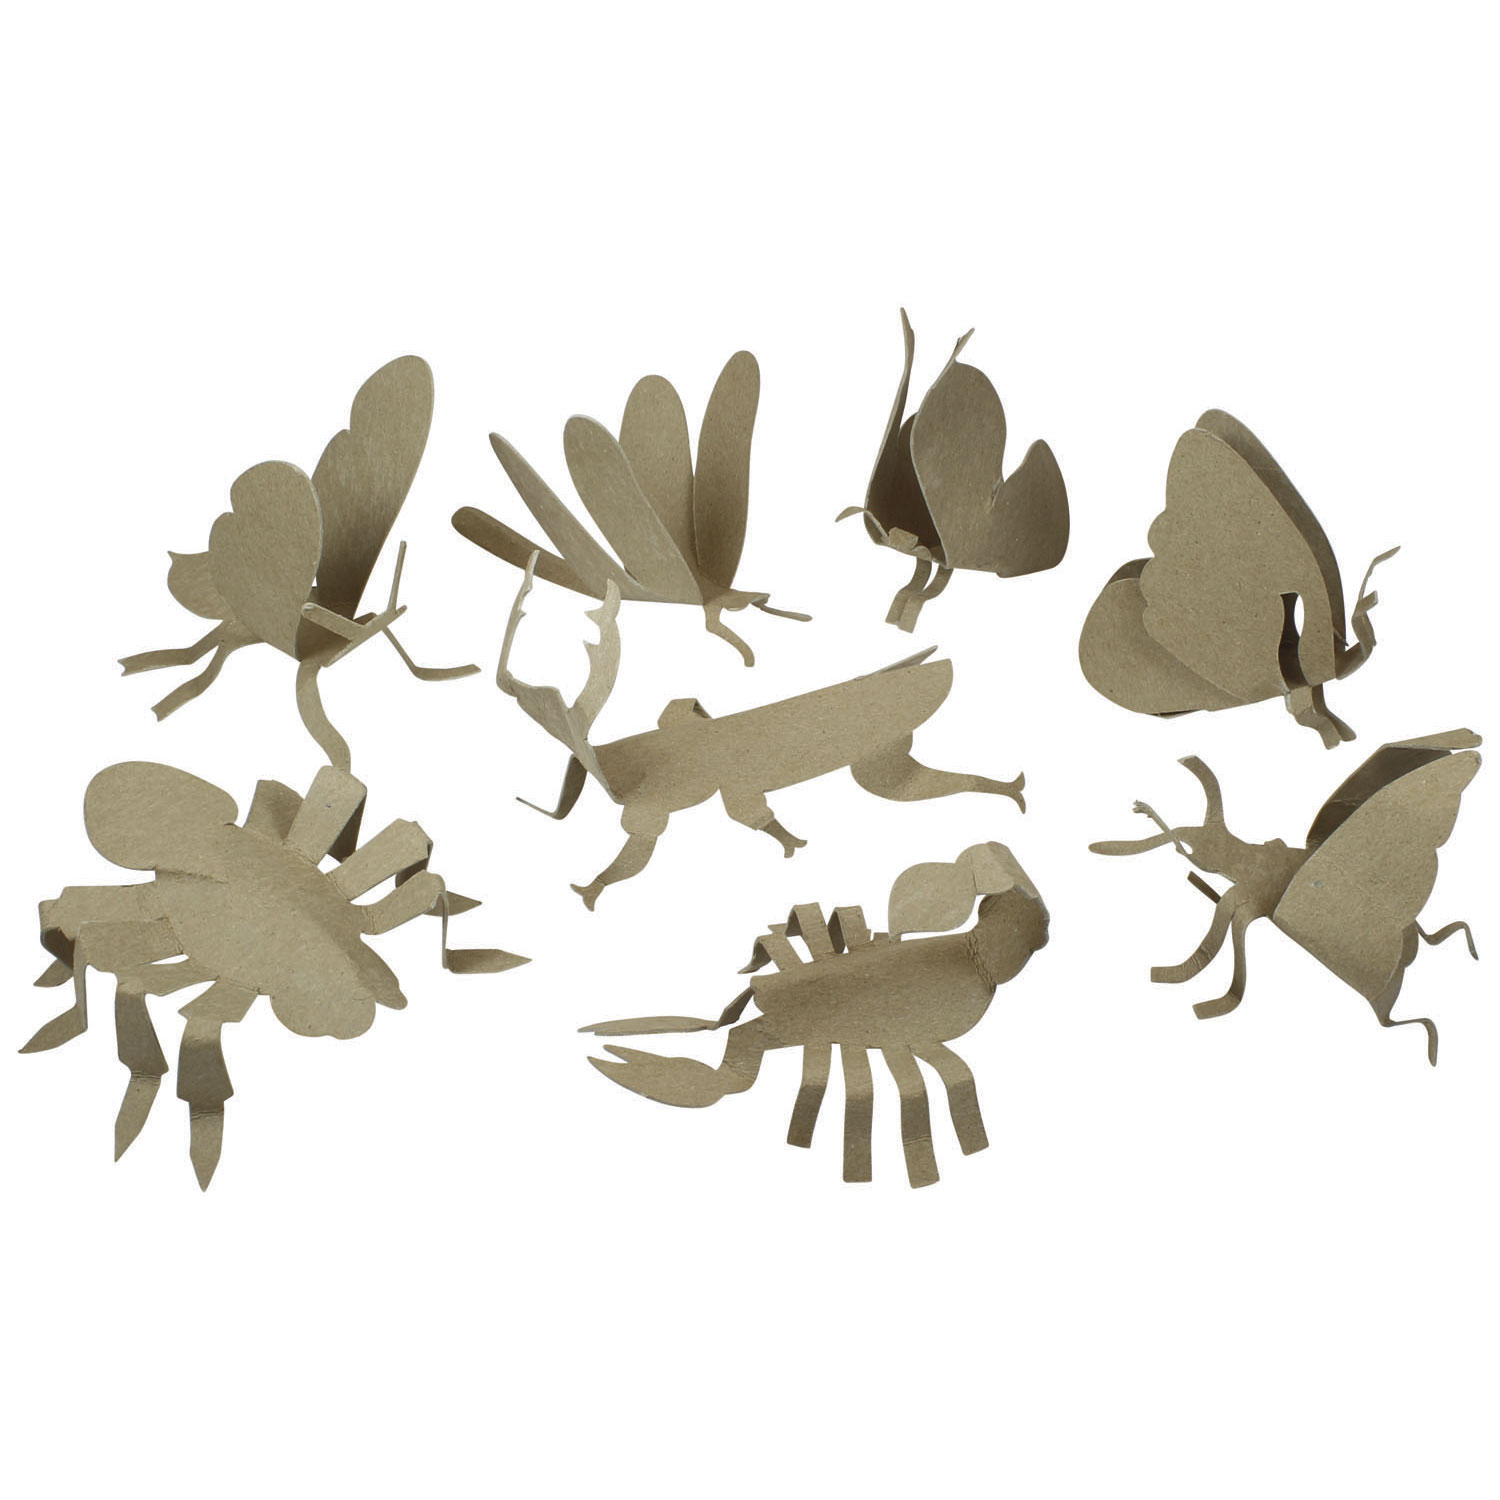 PlayMais Mosaic 3D Insecten Versieren